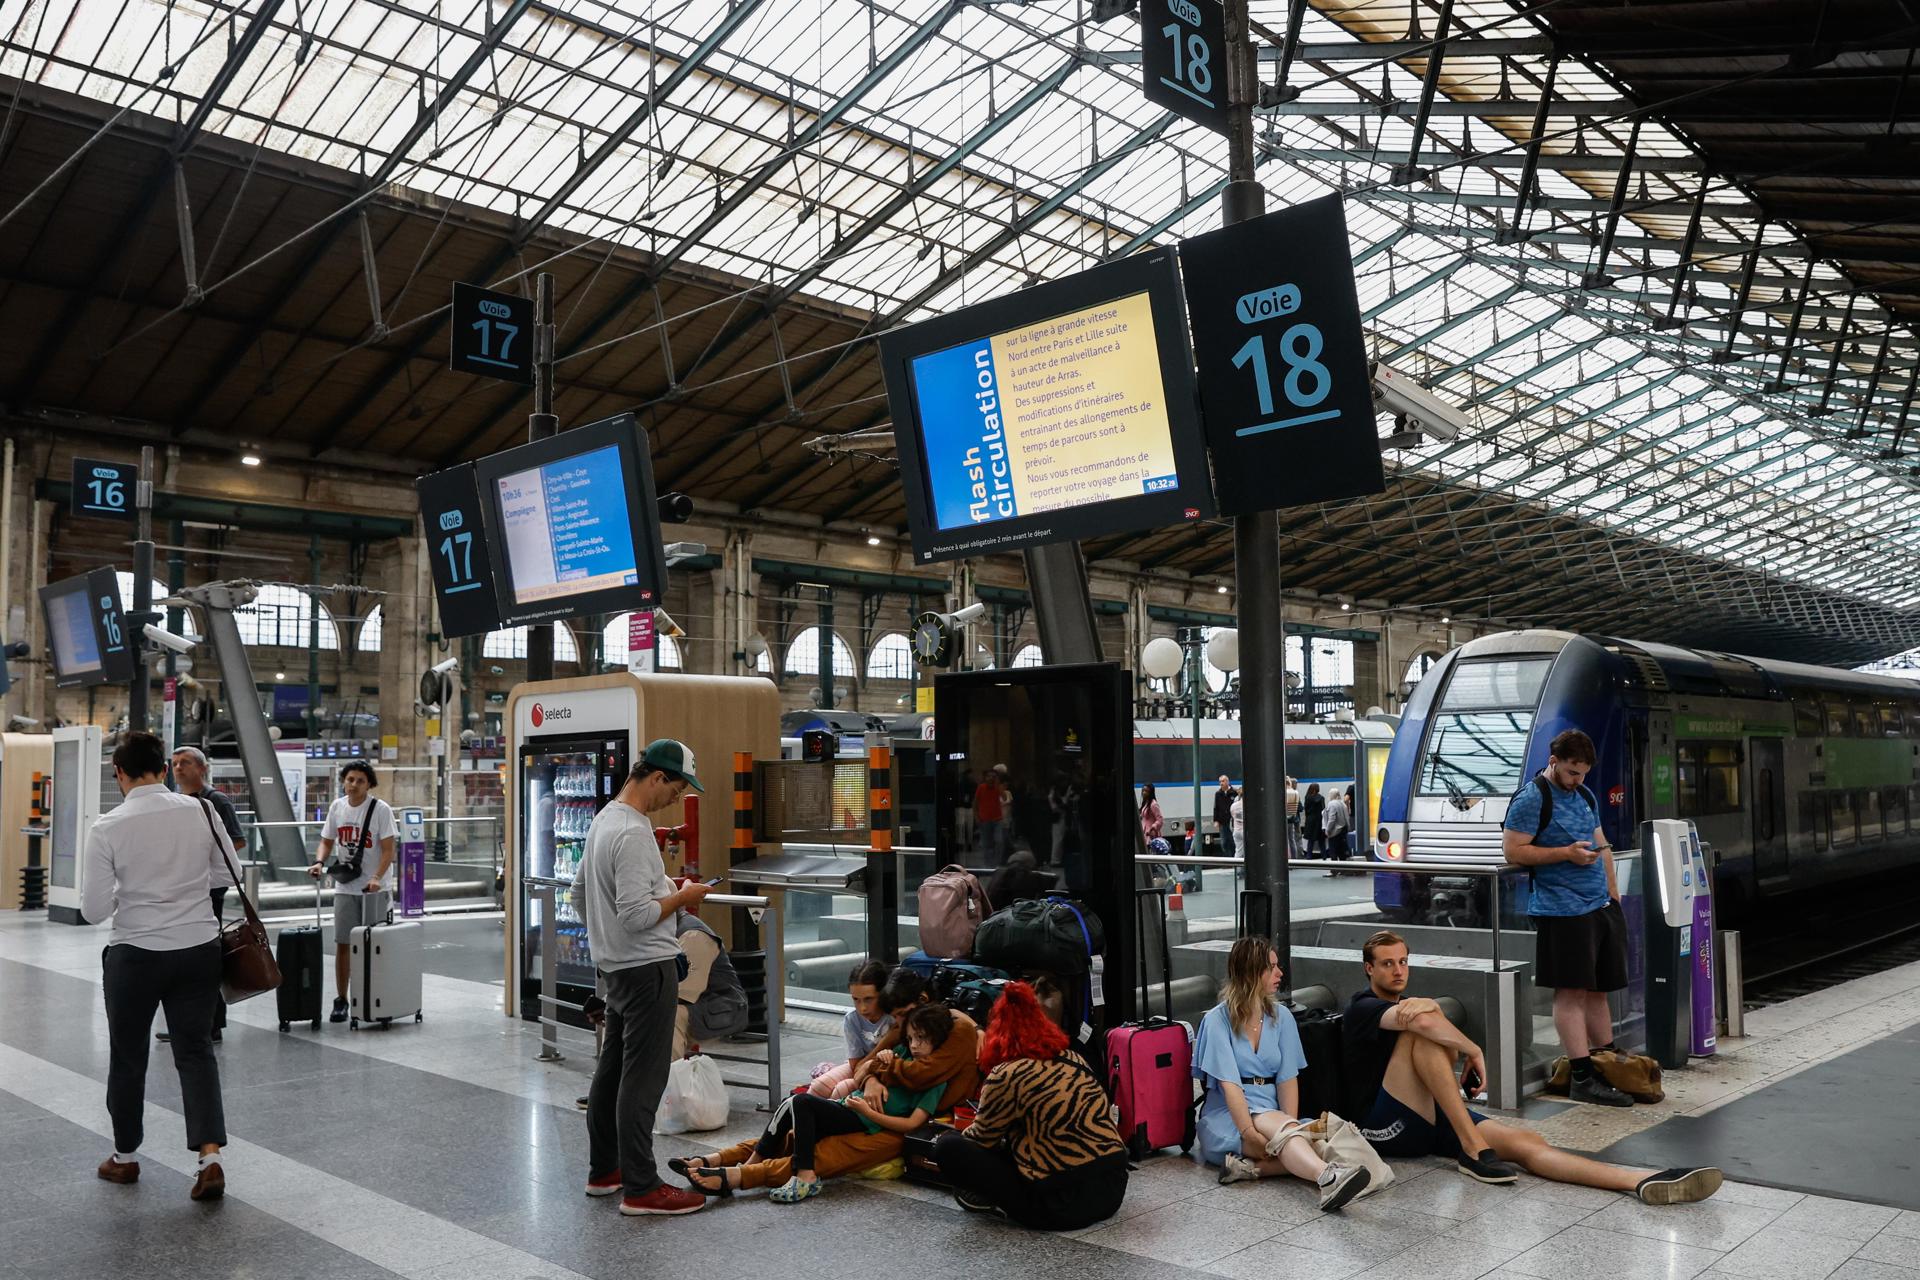 La xarxa de TGV francesa va recuperant la normalitat després de l'atac a gran escala